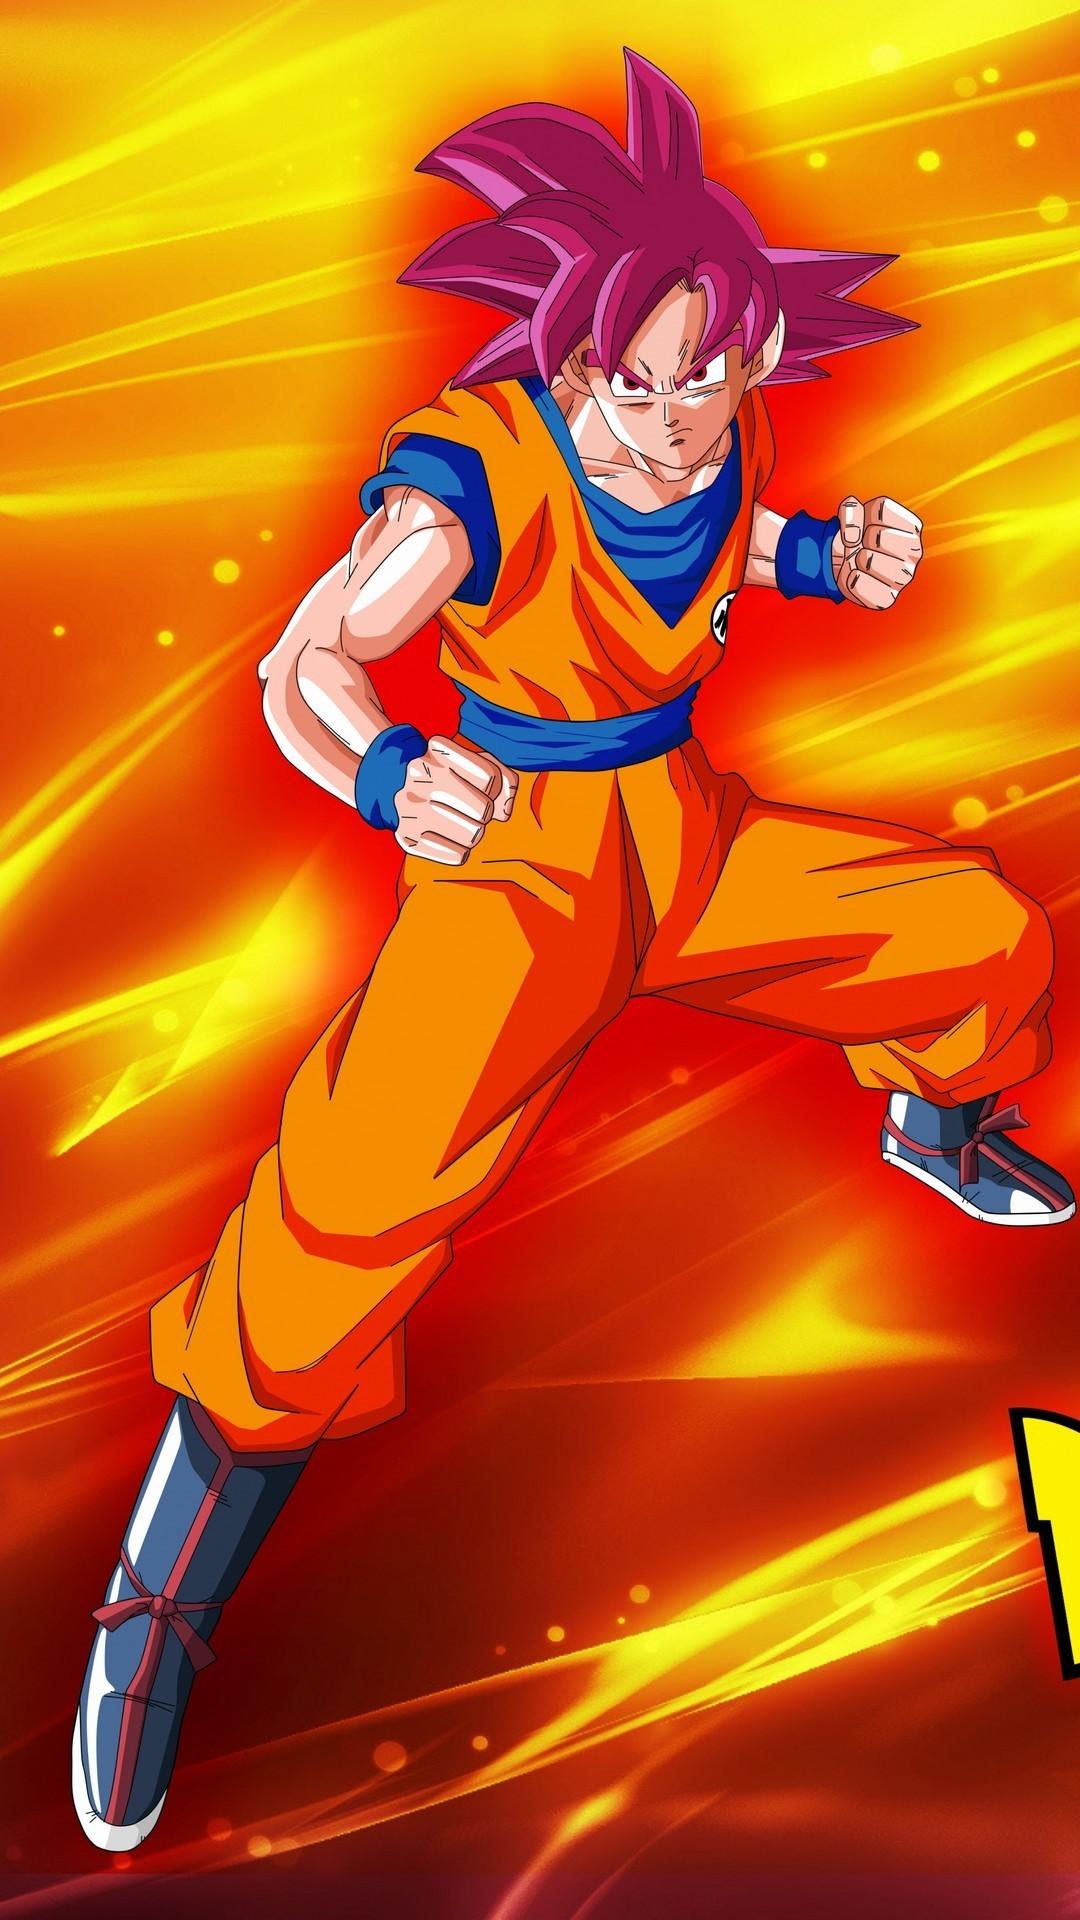 Goku Super Saiyan God Wallpaper Android Android